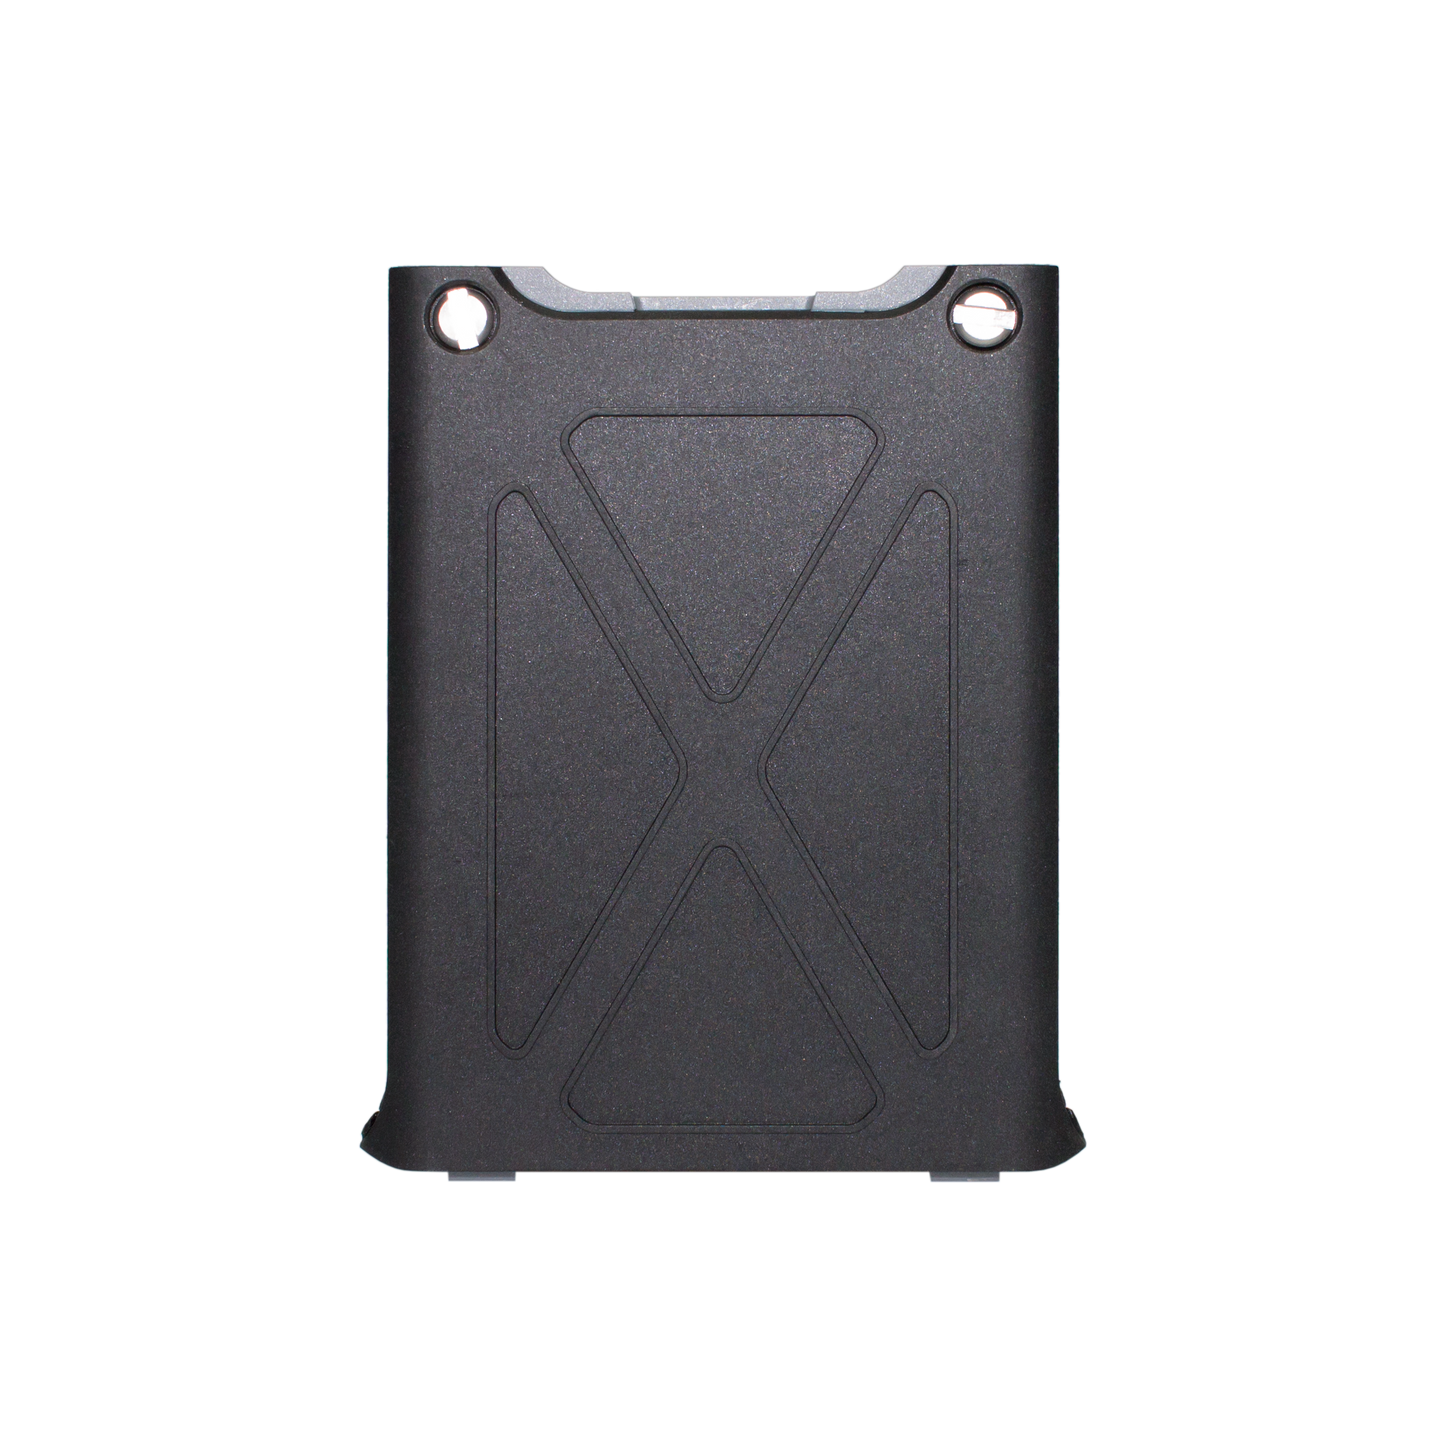 Sonim XP5s battery door. 